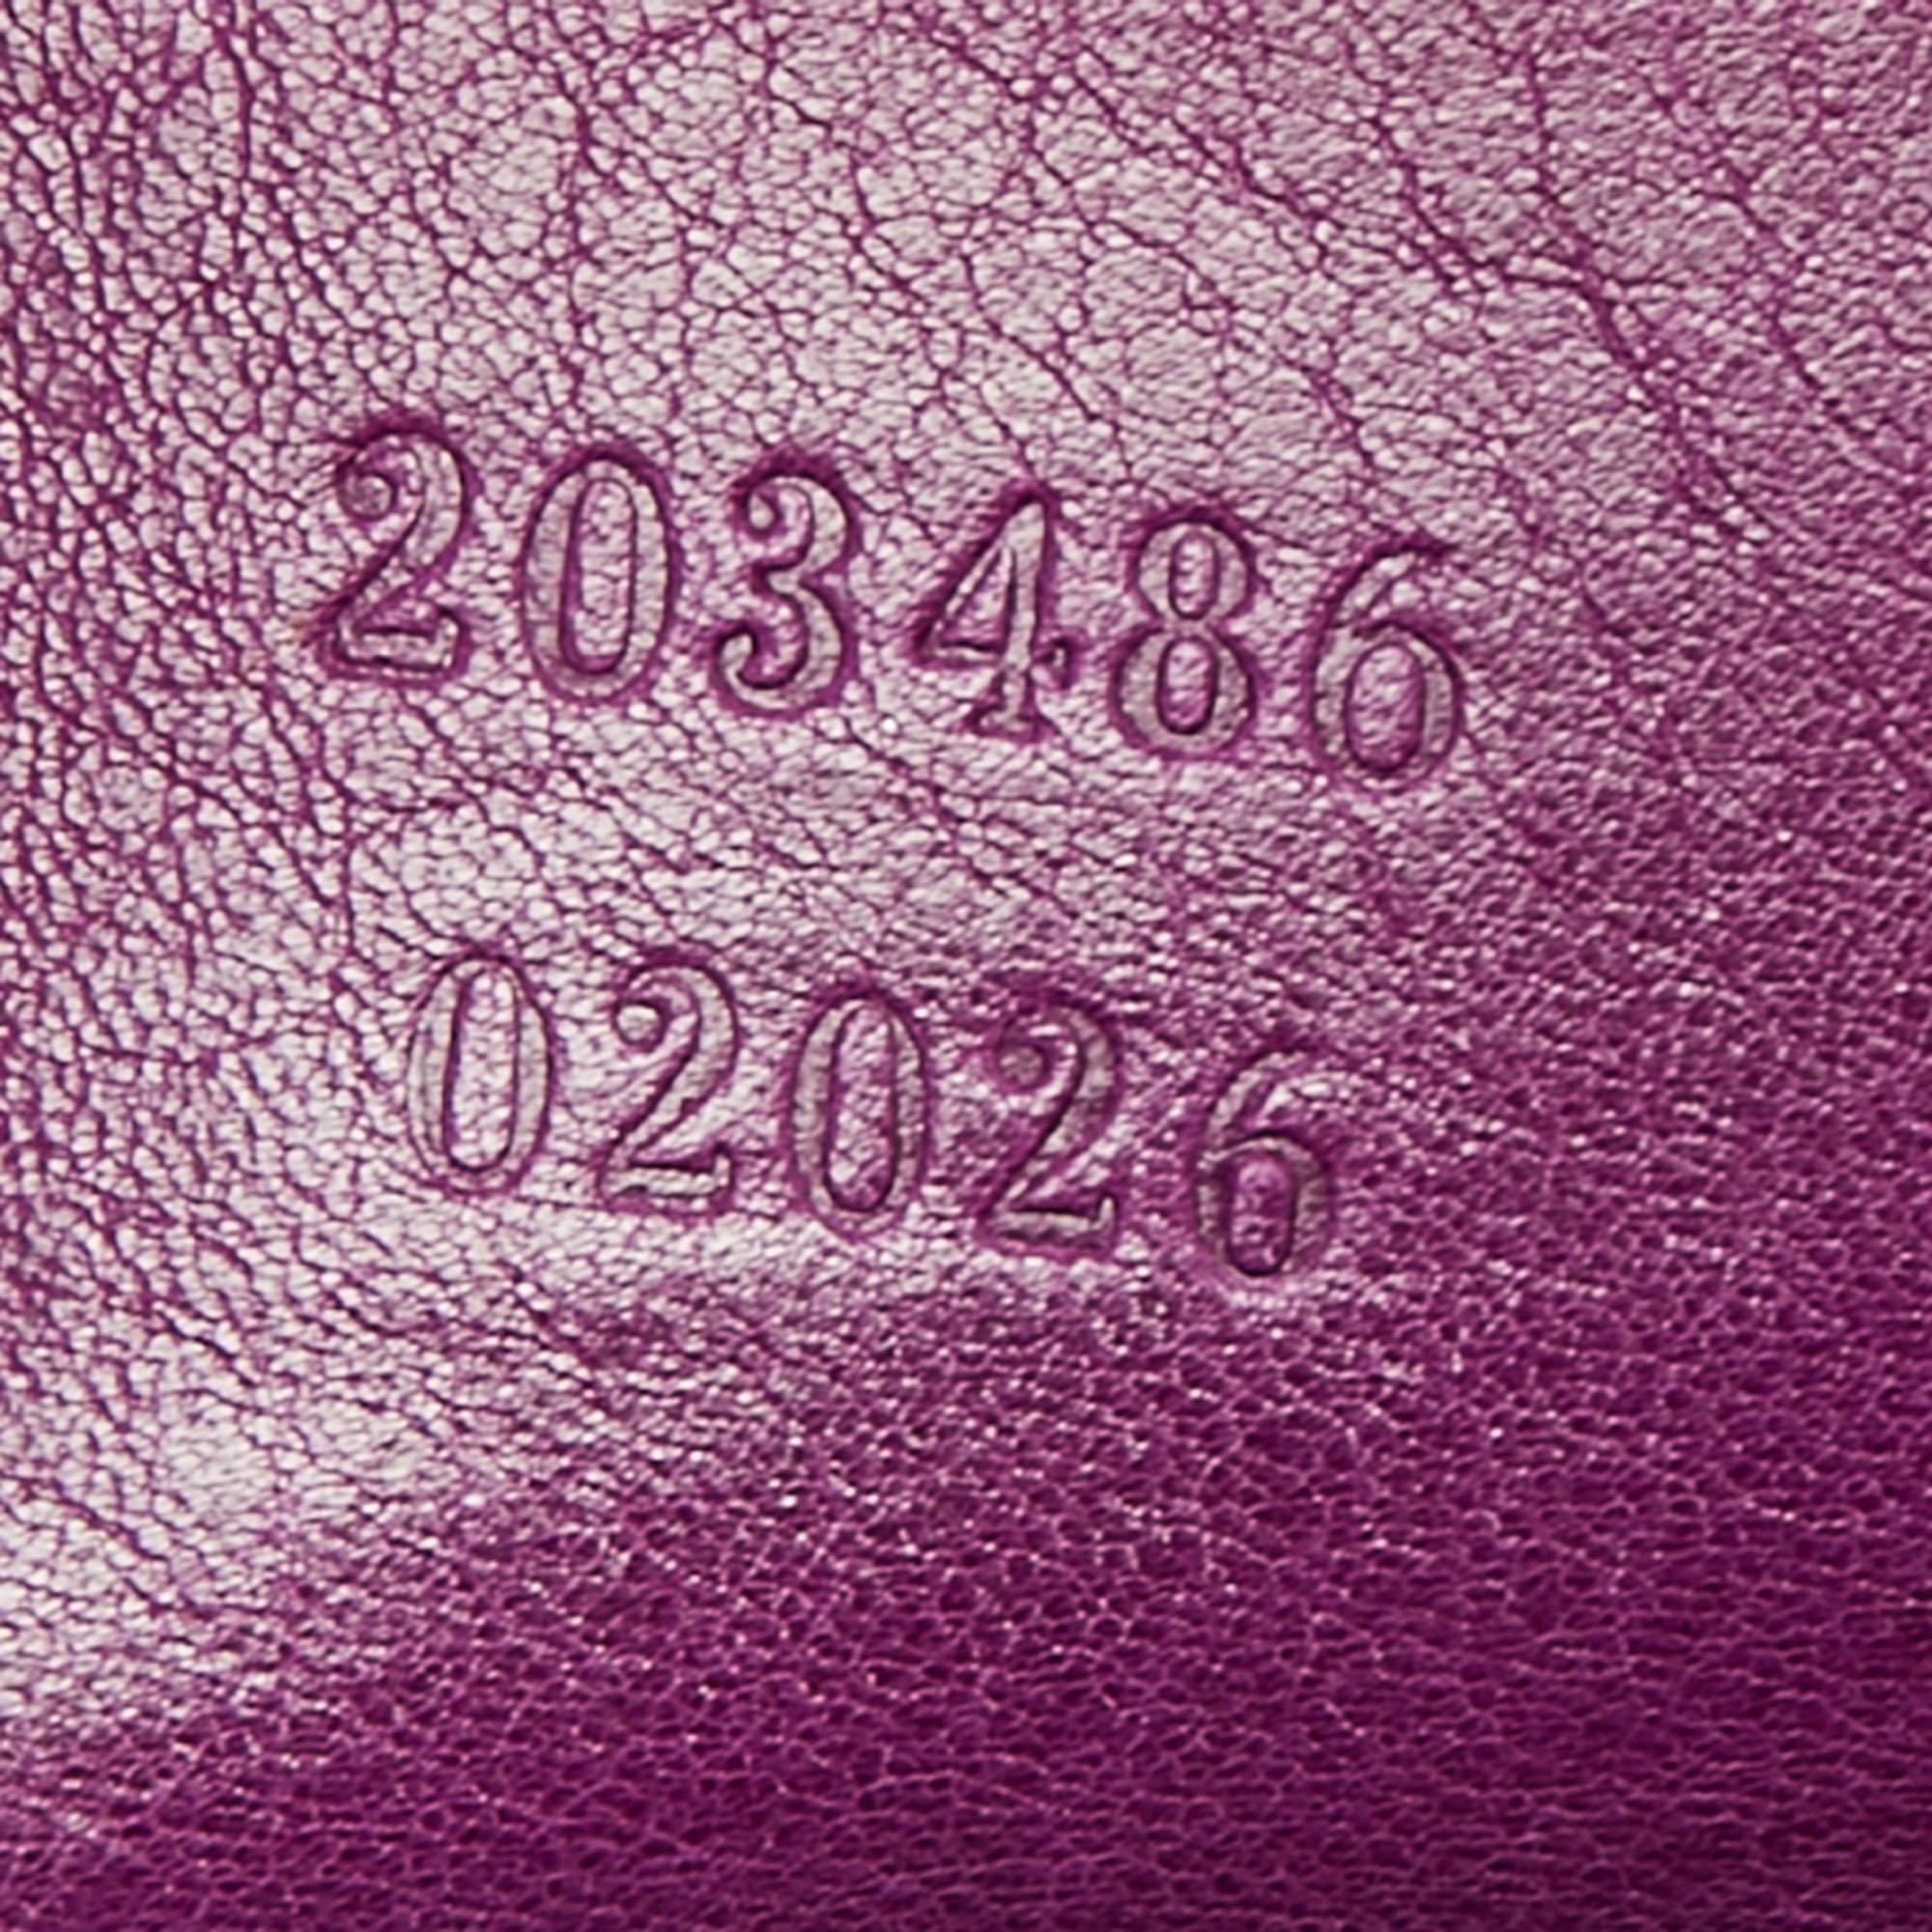 Gucci Purple Patent Leather Hysteria Hobo